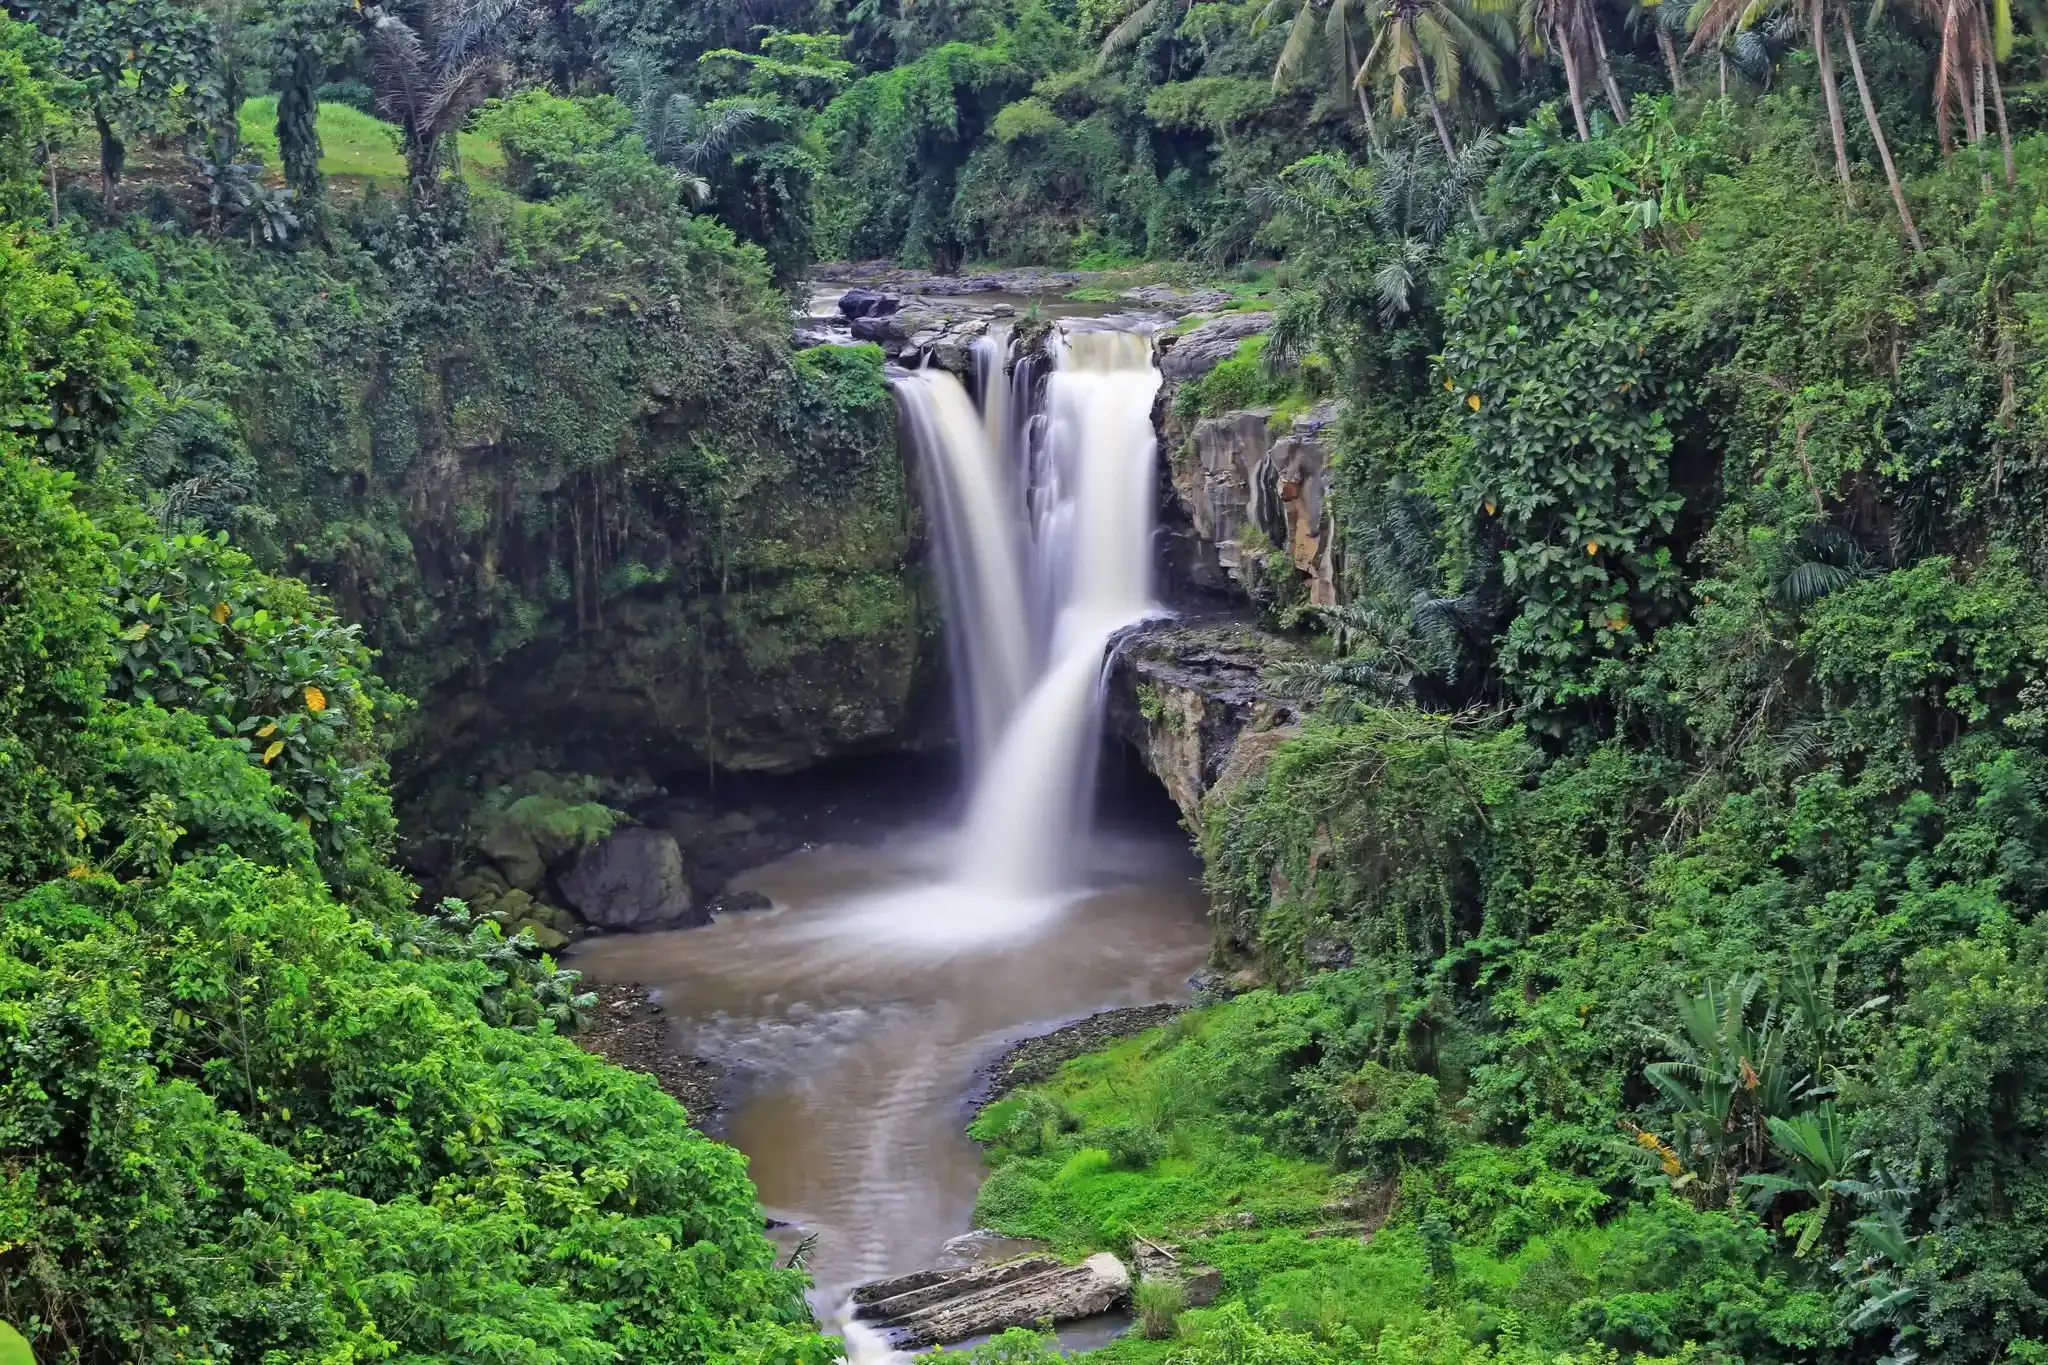 Tegenungan waterfall in Bali (Indonesia)